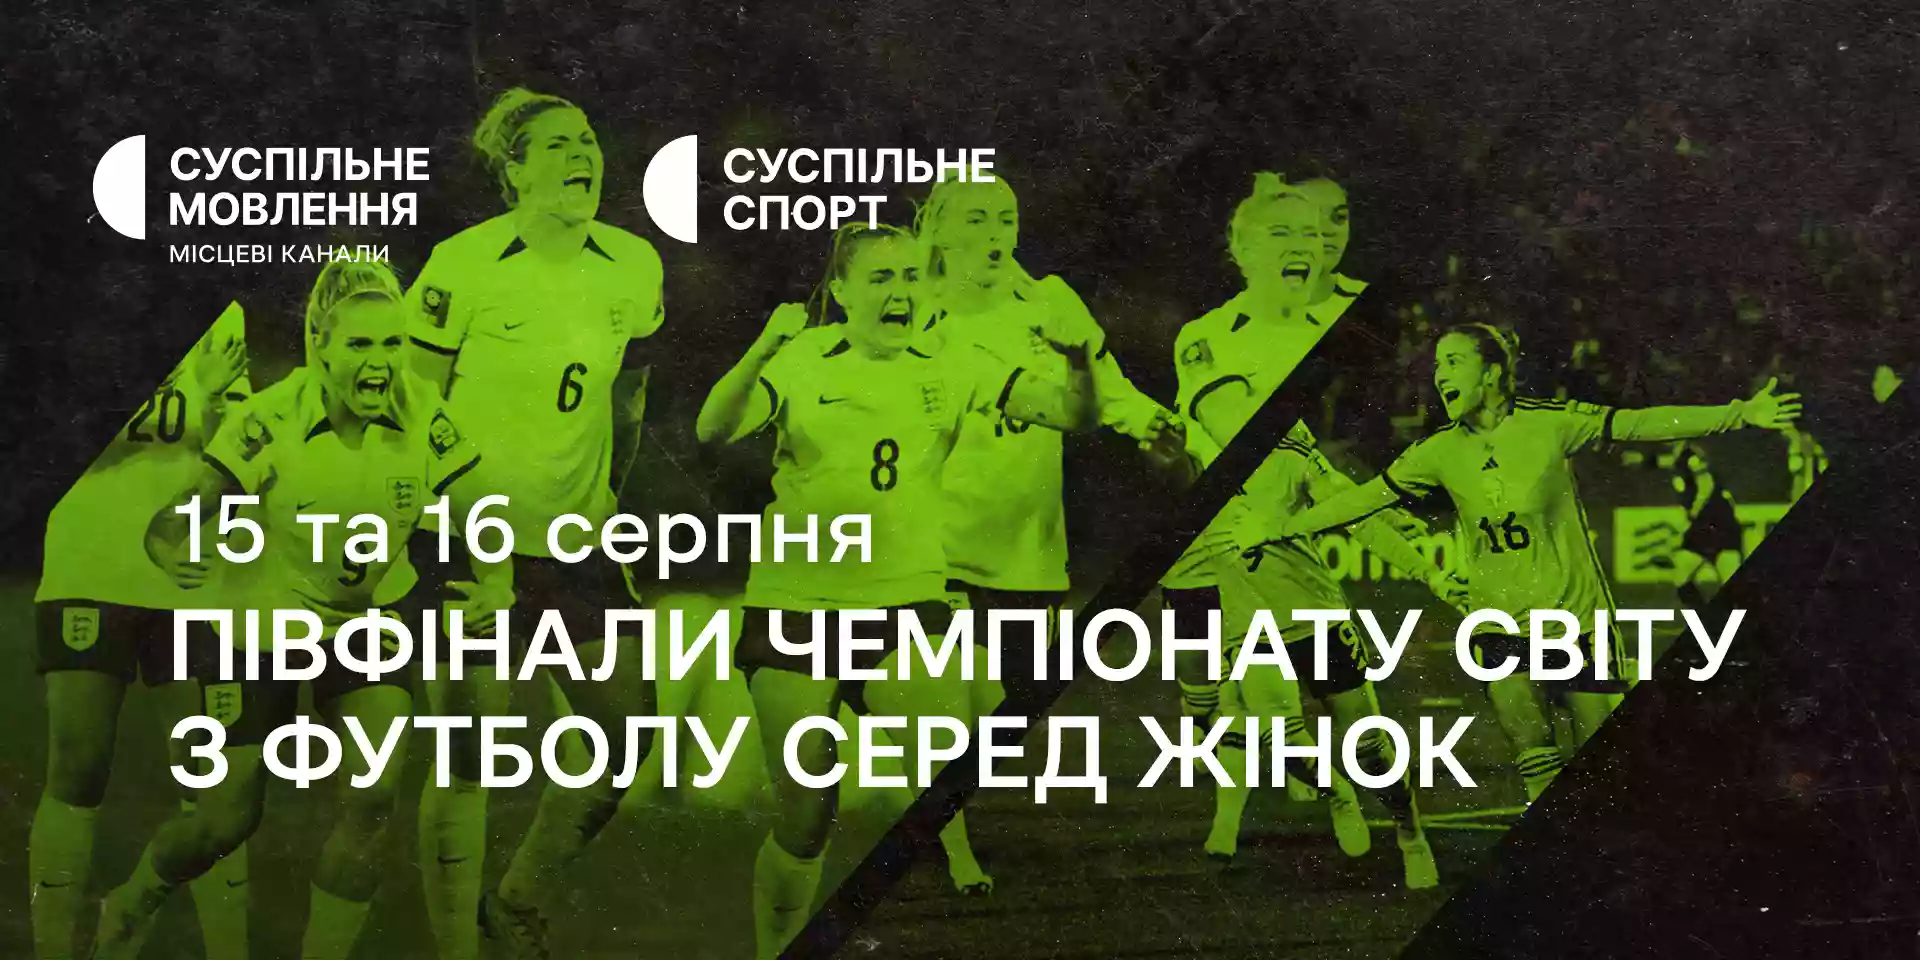 Суспільне транслюватиме півфінали Чемпіонату світу з футболу серед жінок